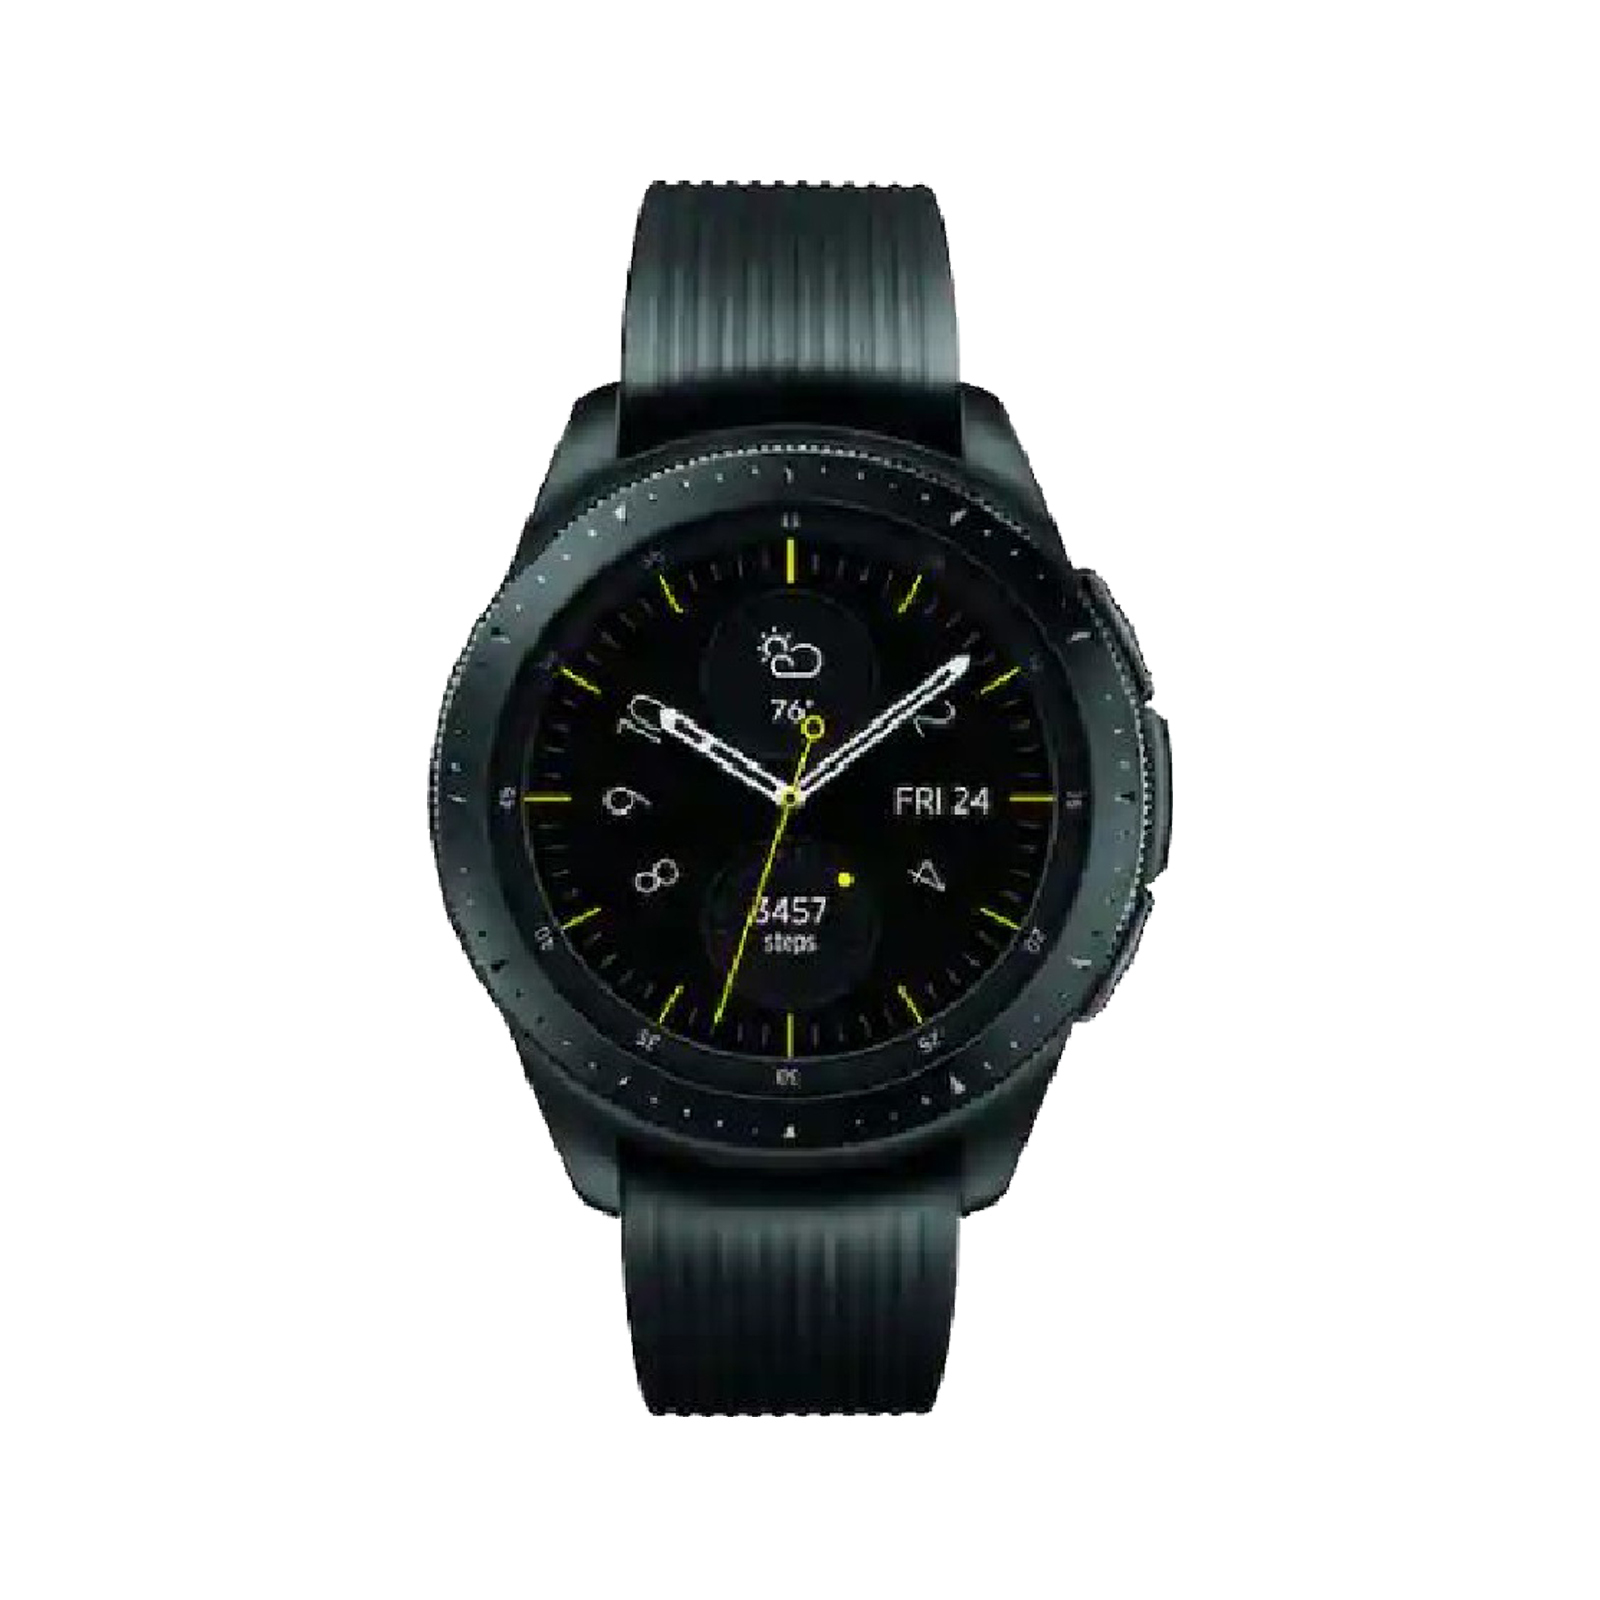 Samsung Galaxy Watch [Wi+Fi + Cellular] [42mm] [Black] [Very Good]